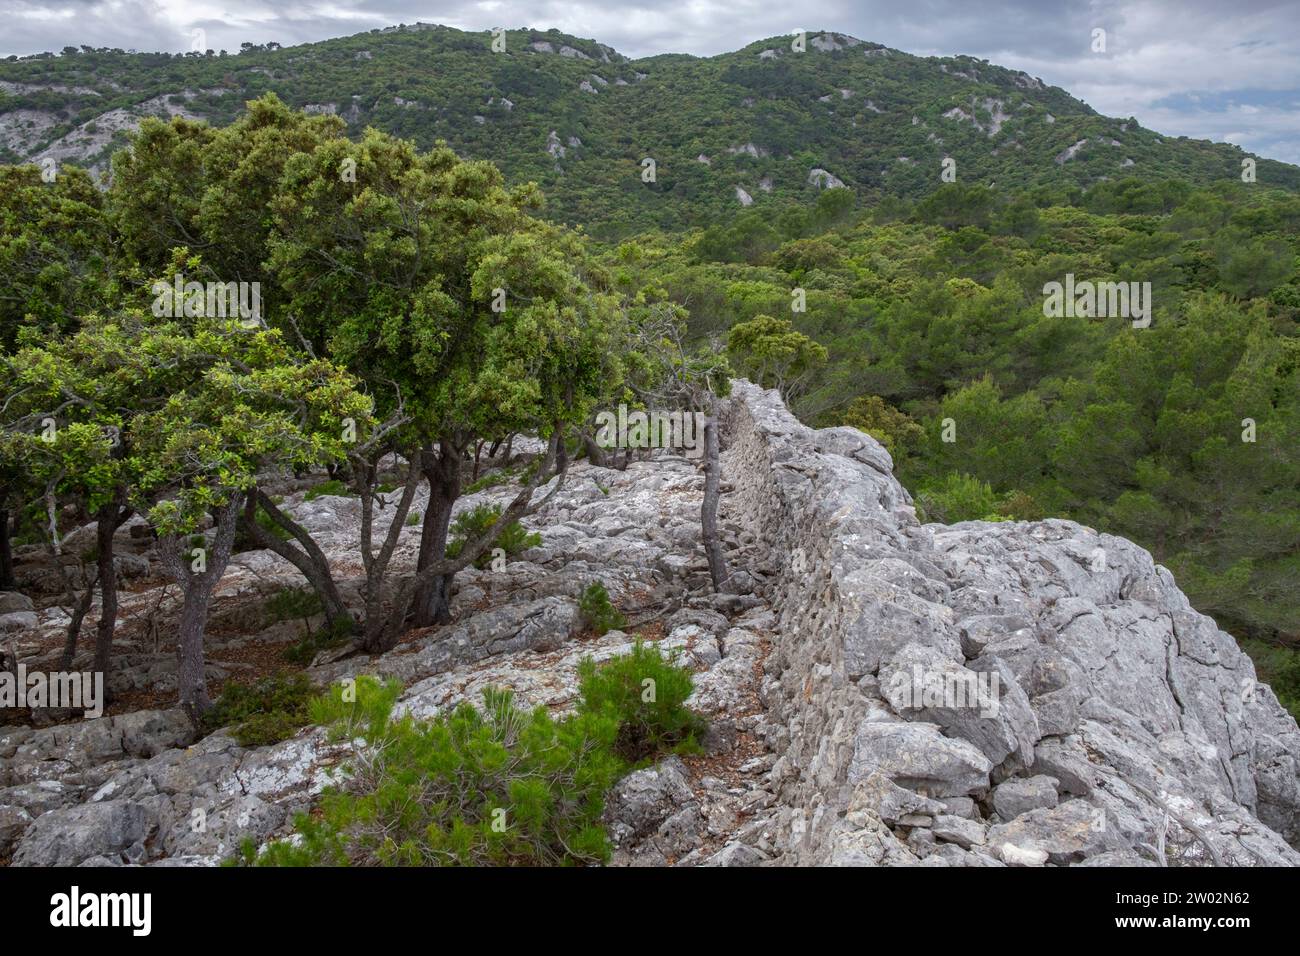 muro tradicional de piedra - Pedre en Sec - Fita del Ram, Esporles, Paraje natural de la Serra de Tramuntana, Mallorca, balearic islands, Spain Stock Photo